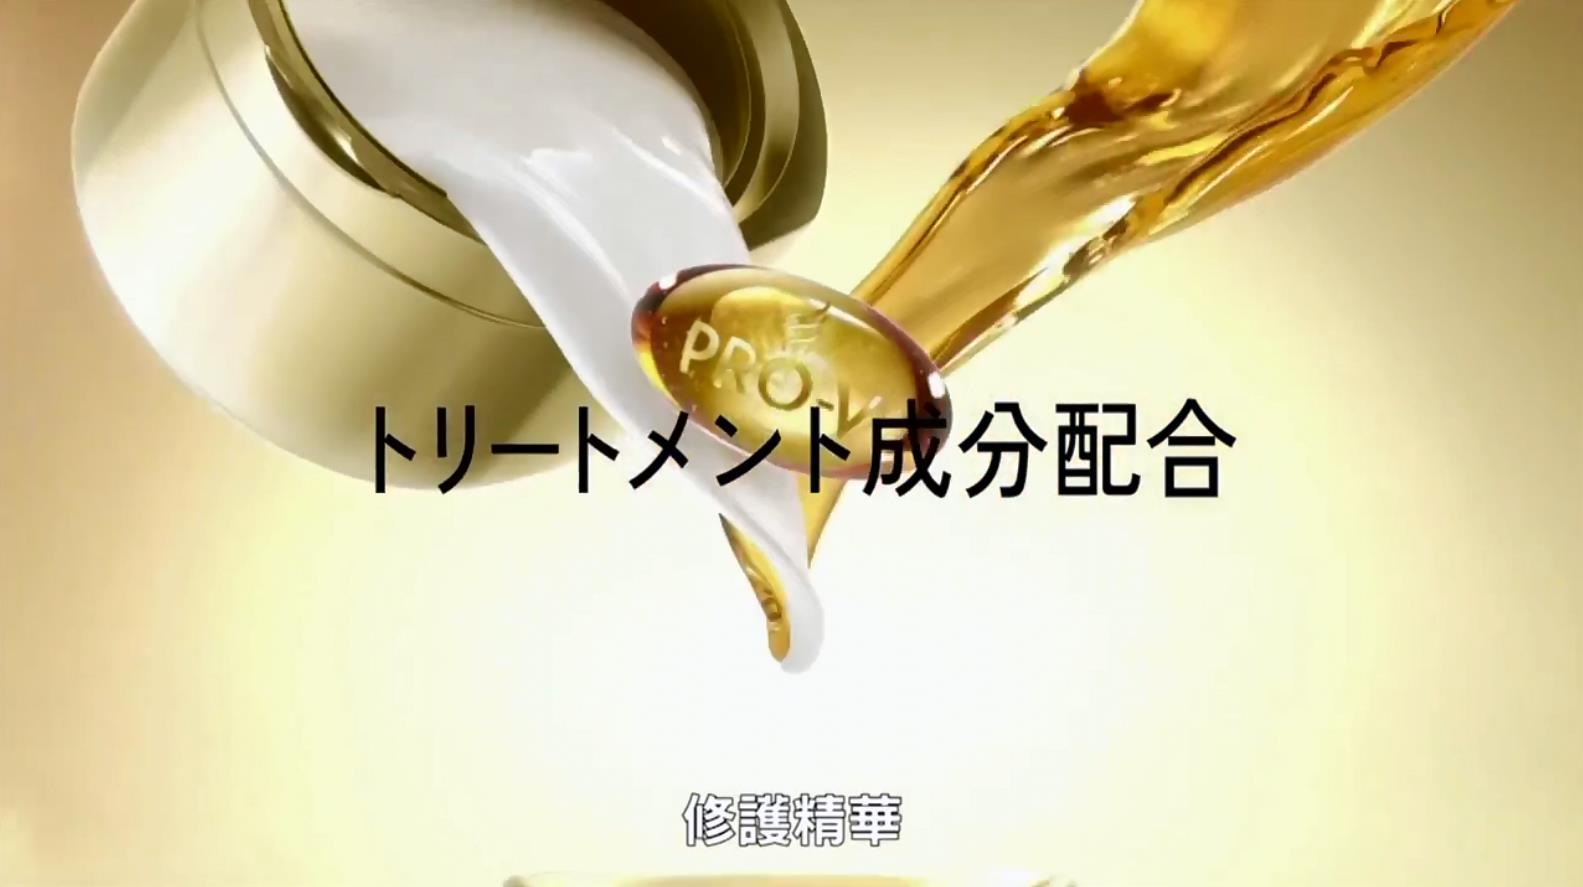 日版 Pantene 日本极致洗护系列 广告